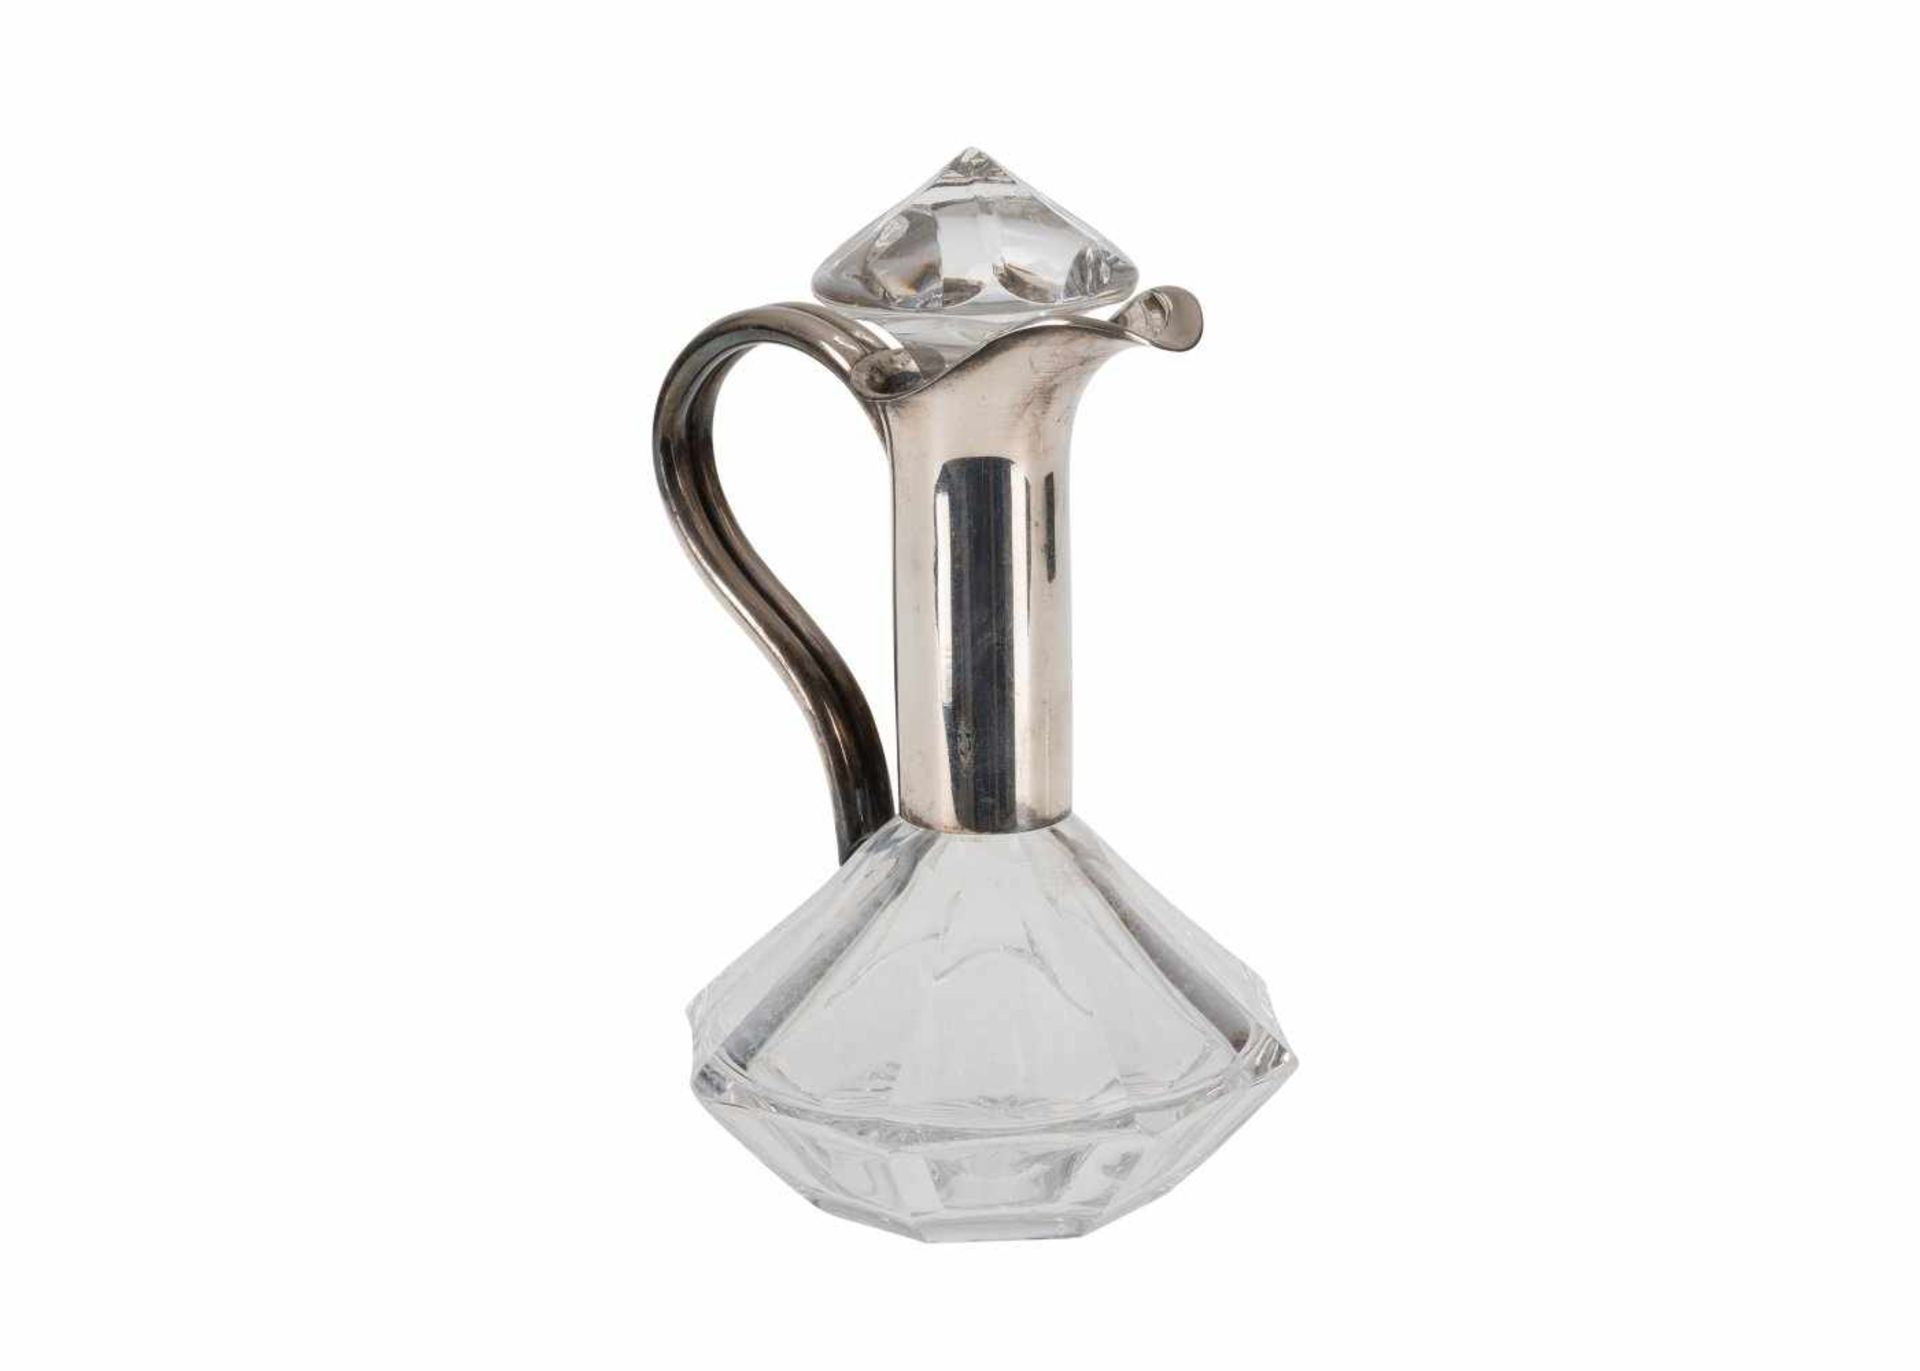 Kleine KaraffeFarbloses Glas, facettiert geschliffen, Silbermontierung (835). Firma Wilhelm